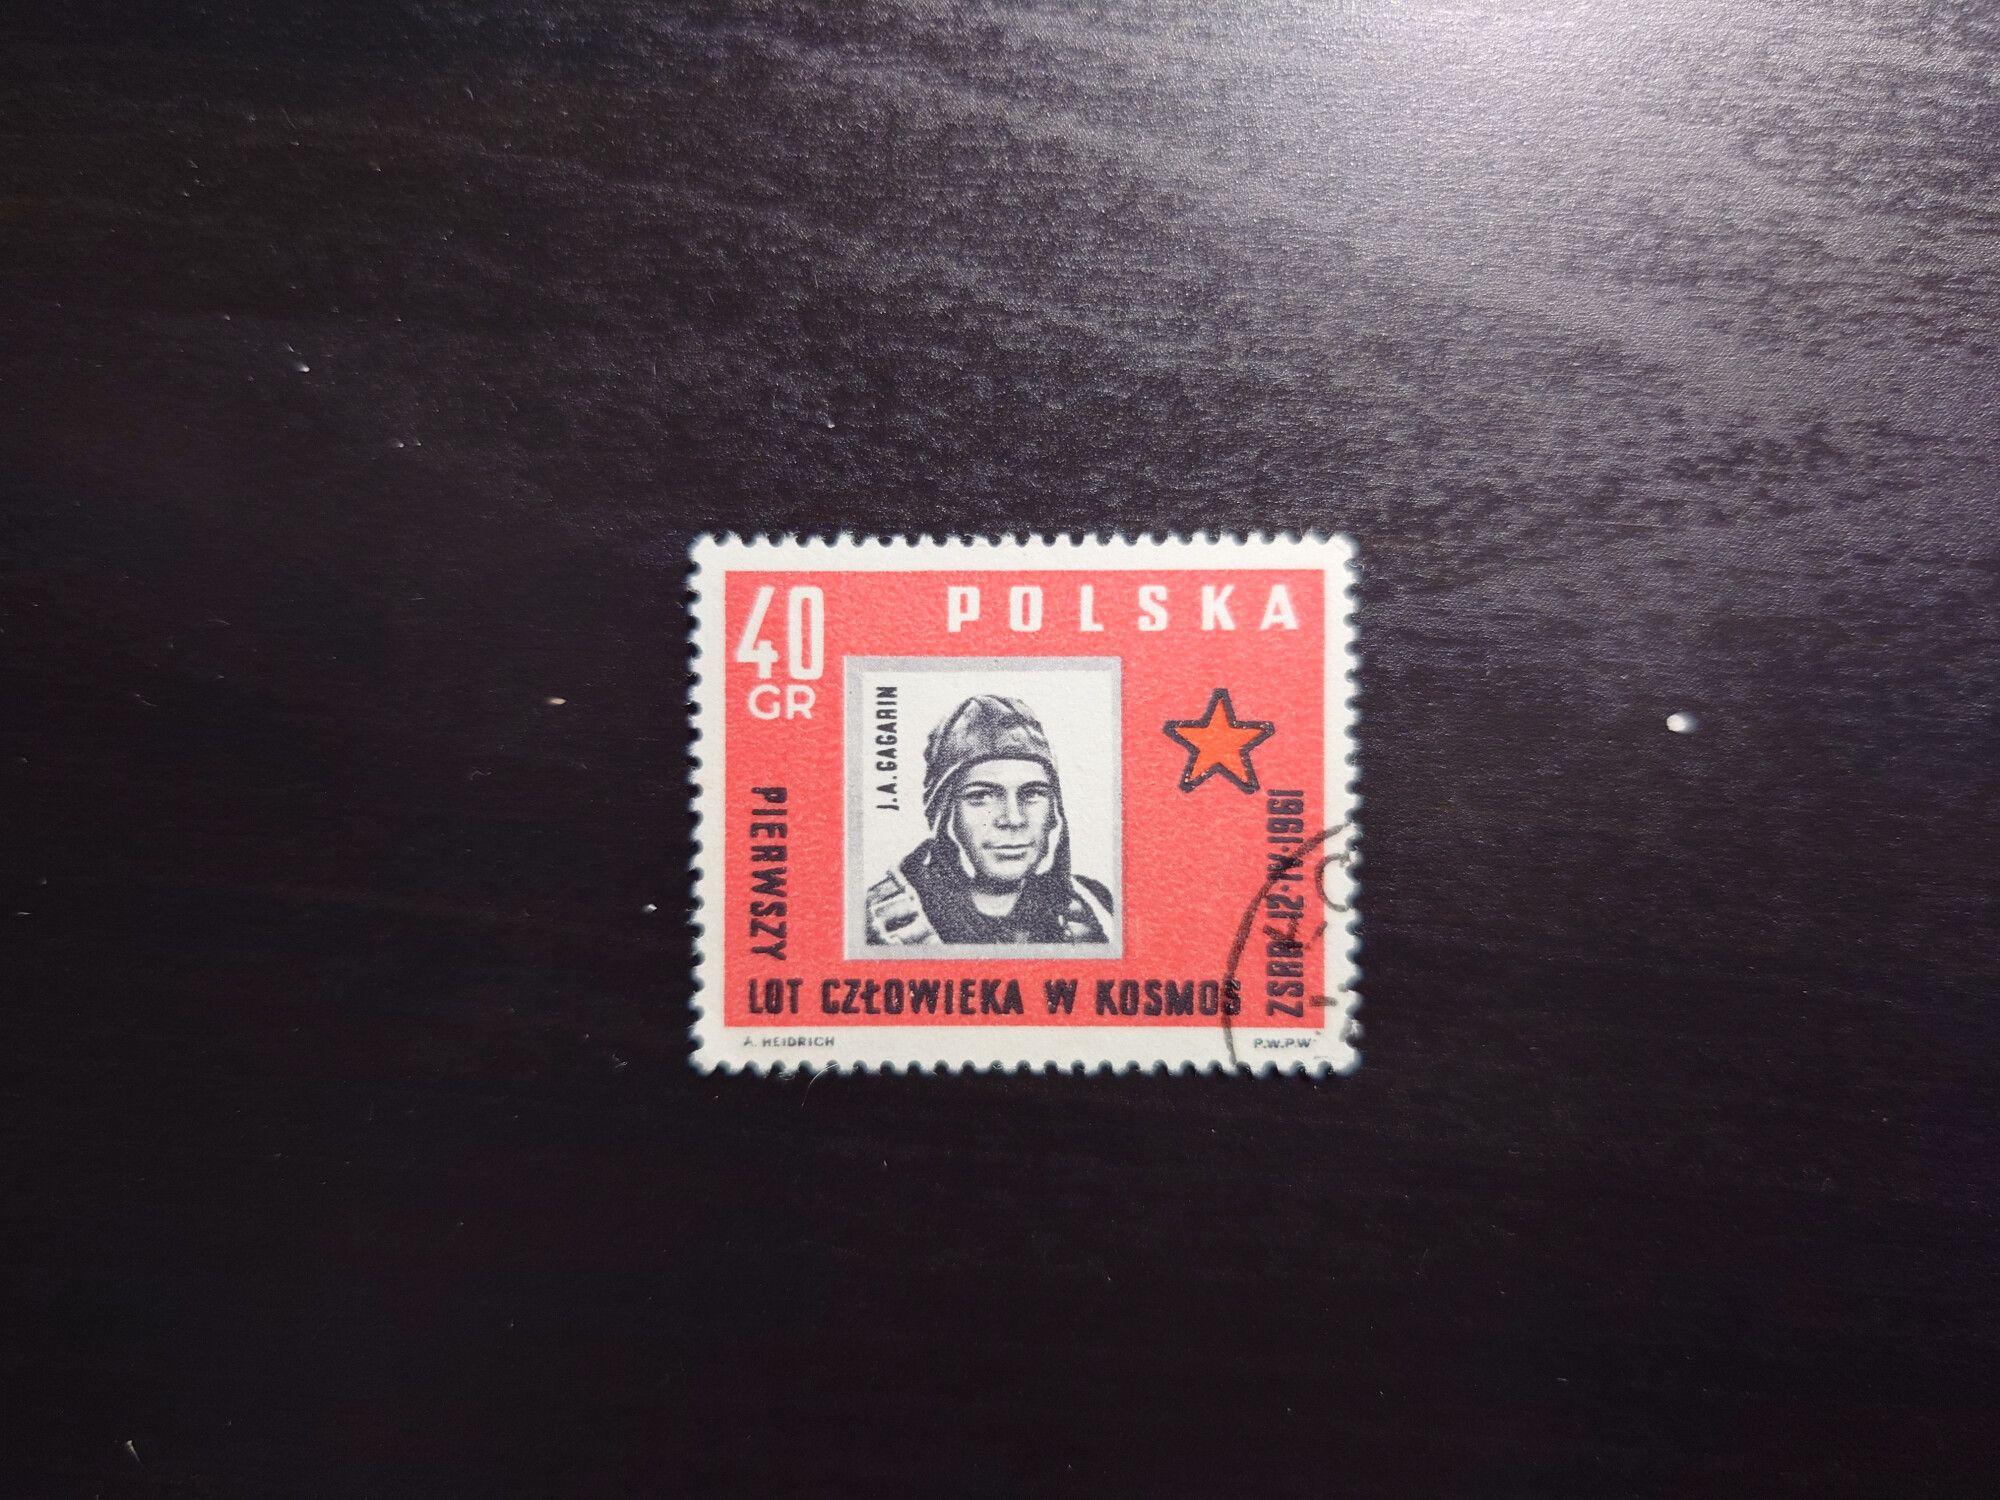  Polska Gagarin (40 Cr)